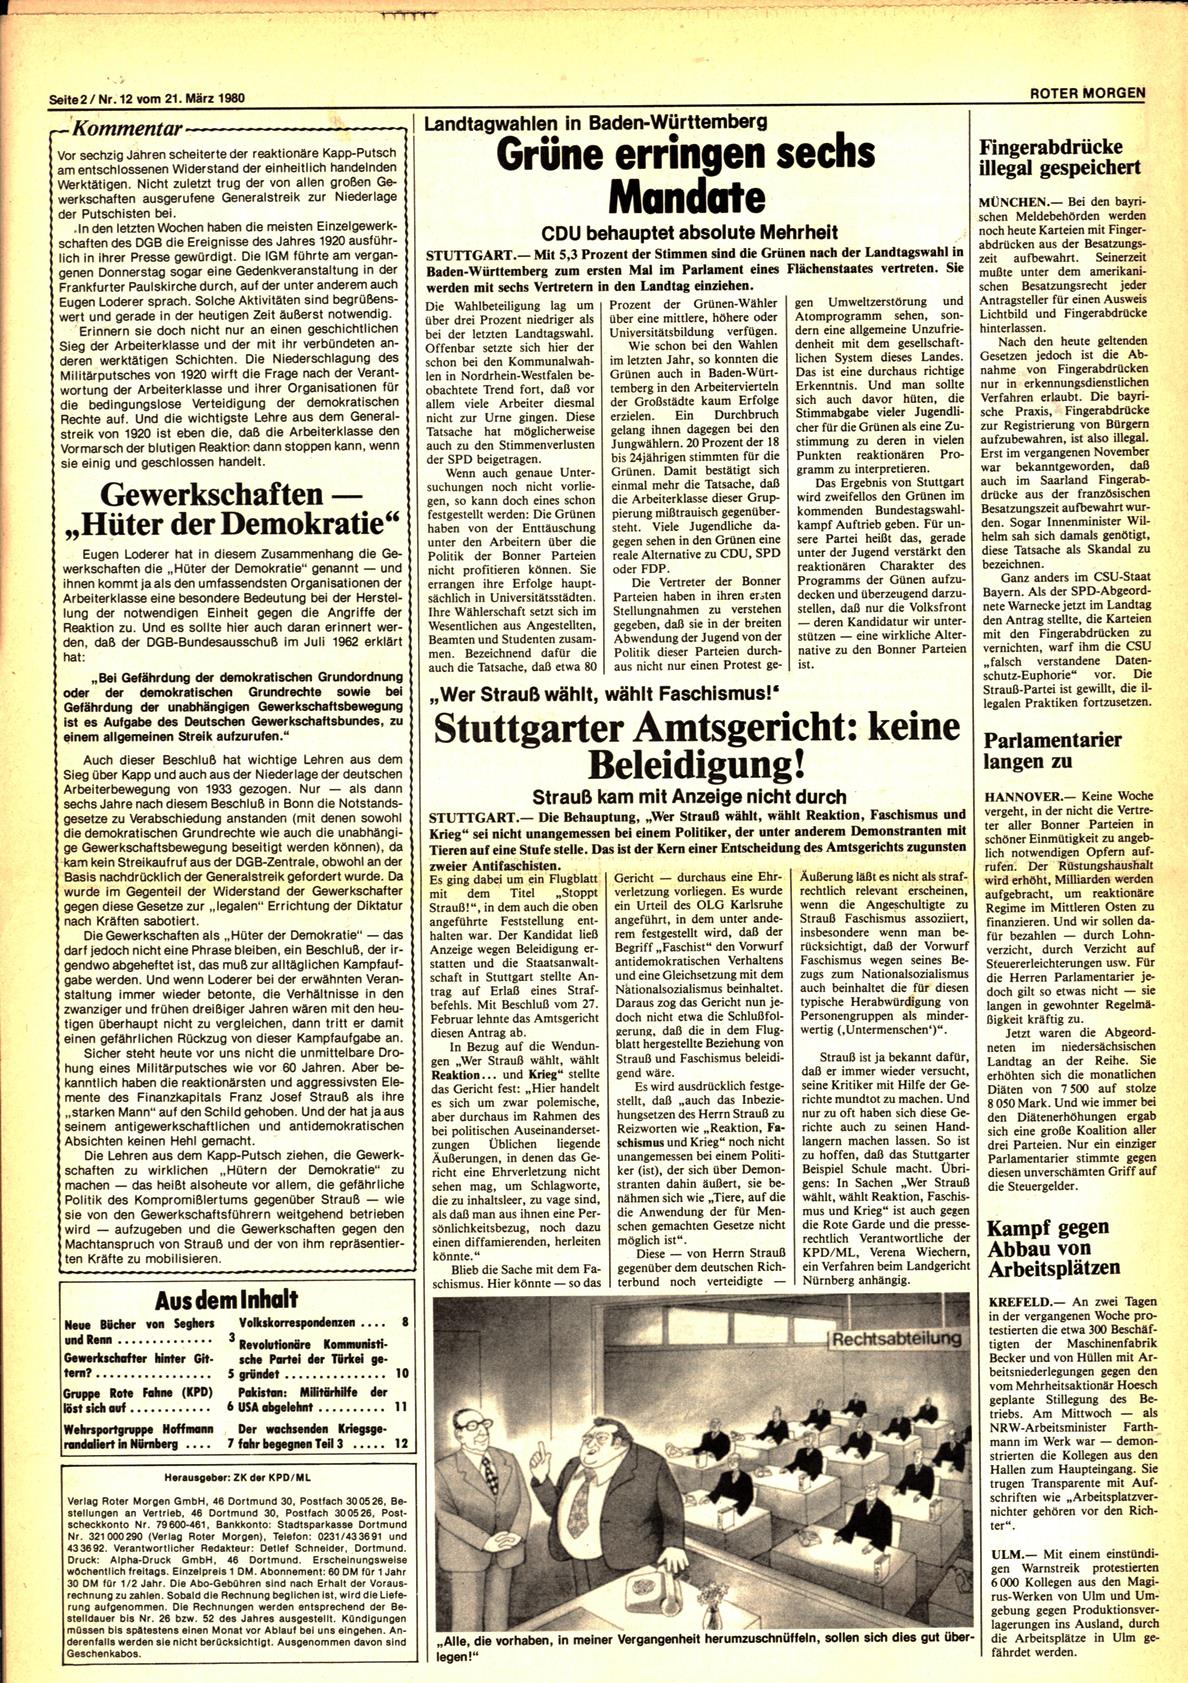 Roter Morgen, 14. Jg., 21. März 1980, Nr. 12, Seite 2